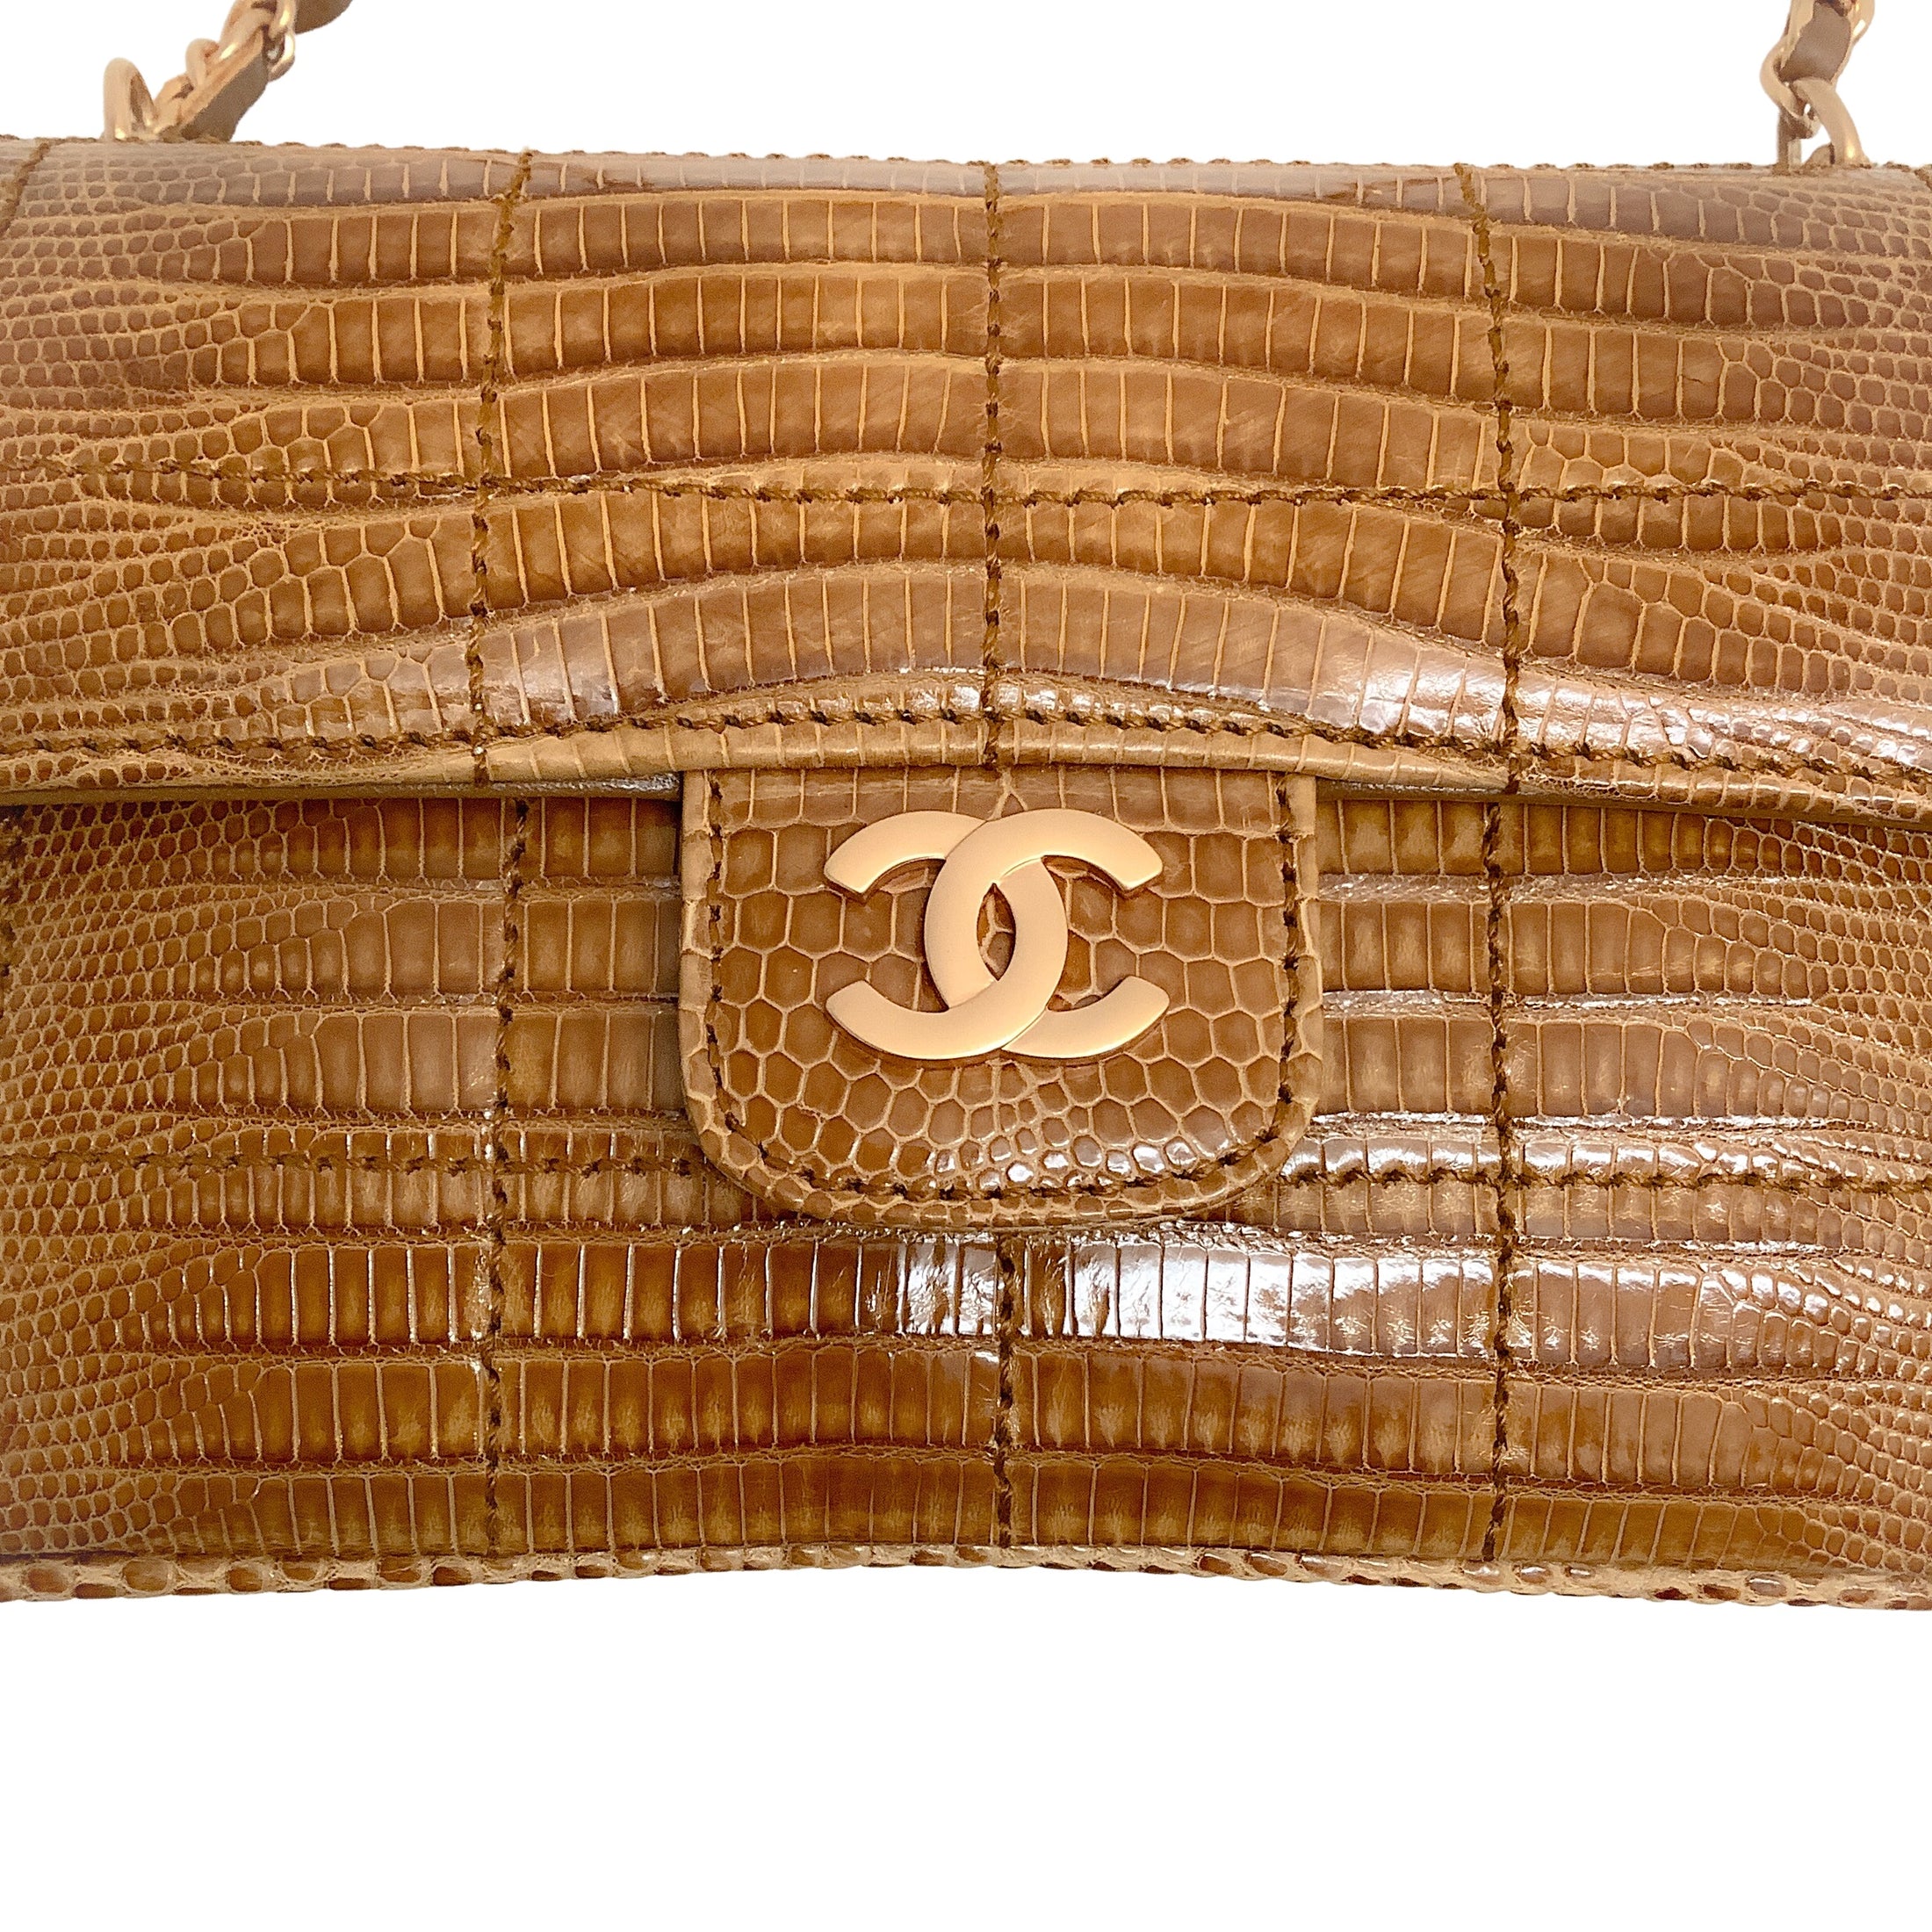 Chanel Vintage Flap Beige Lizard Skin Leather Cross Body Bag